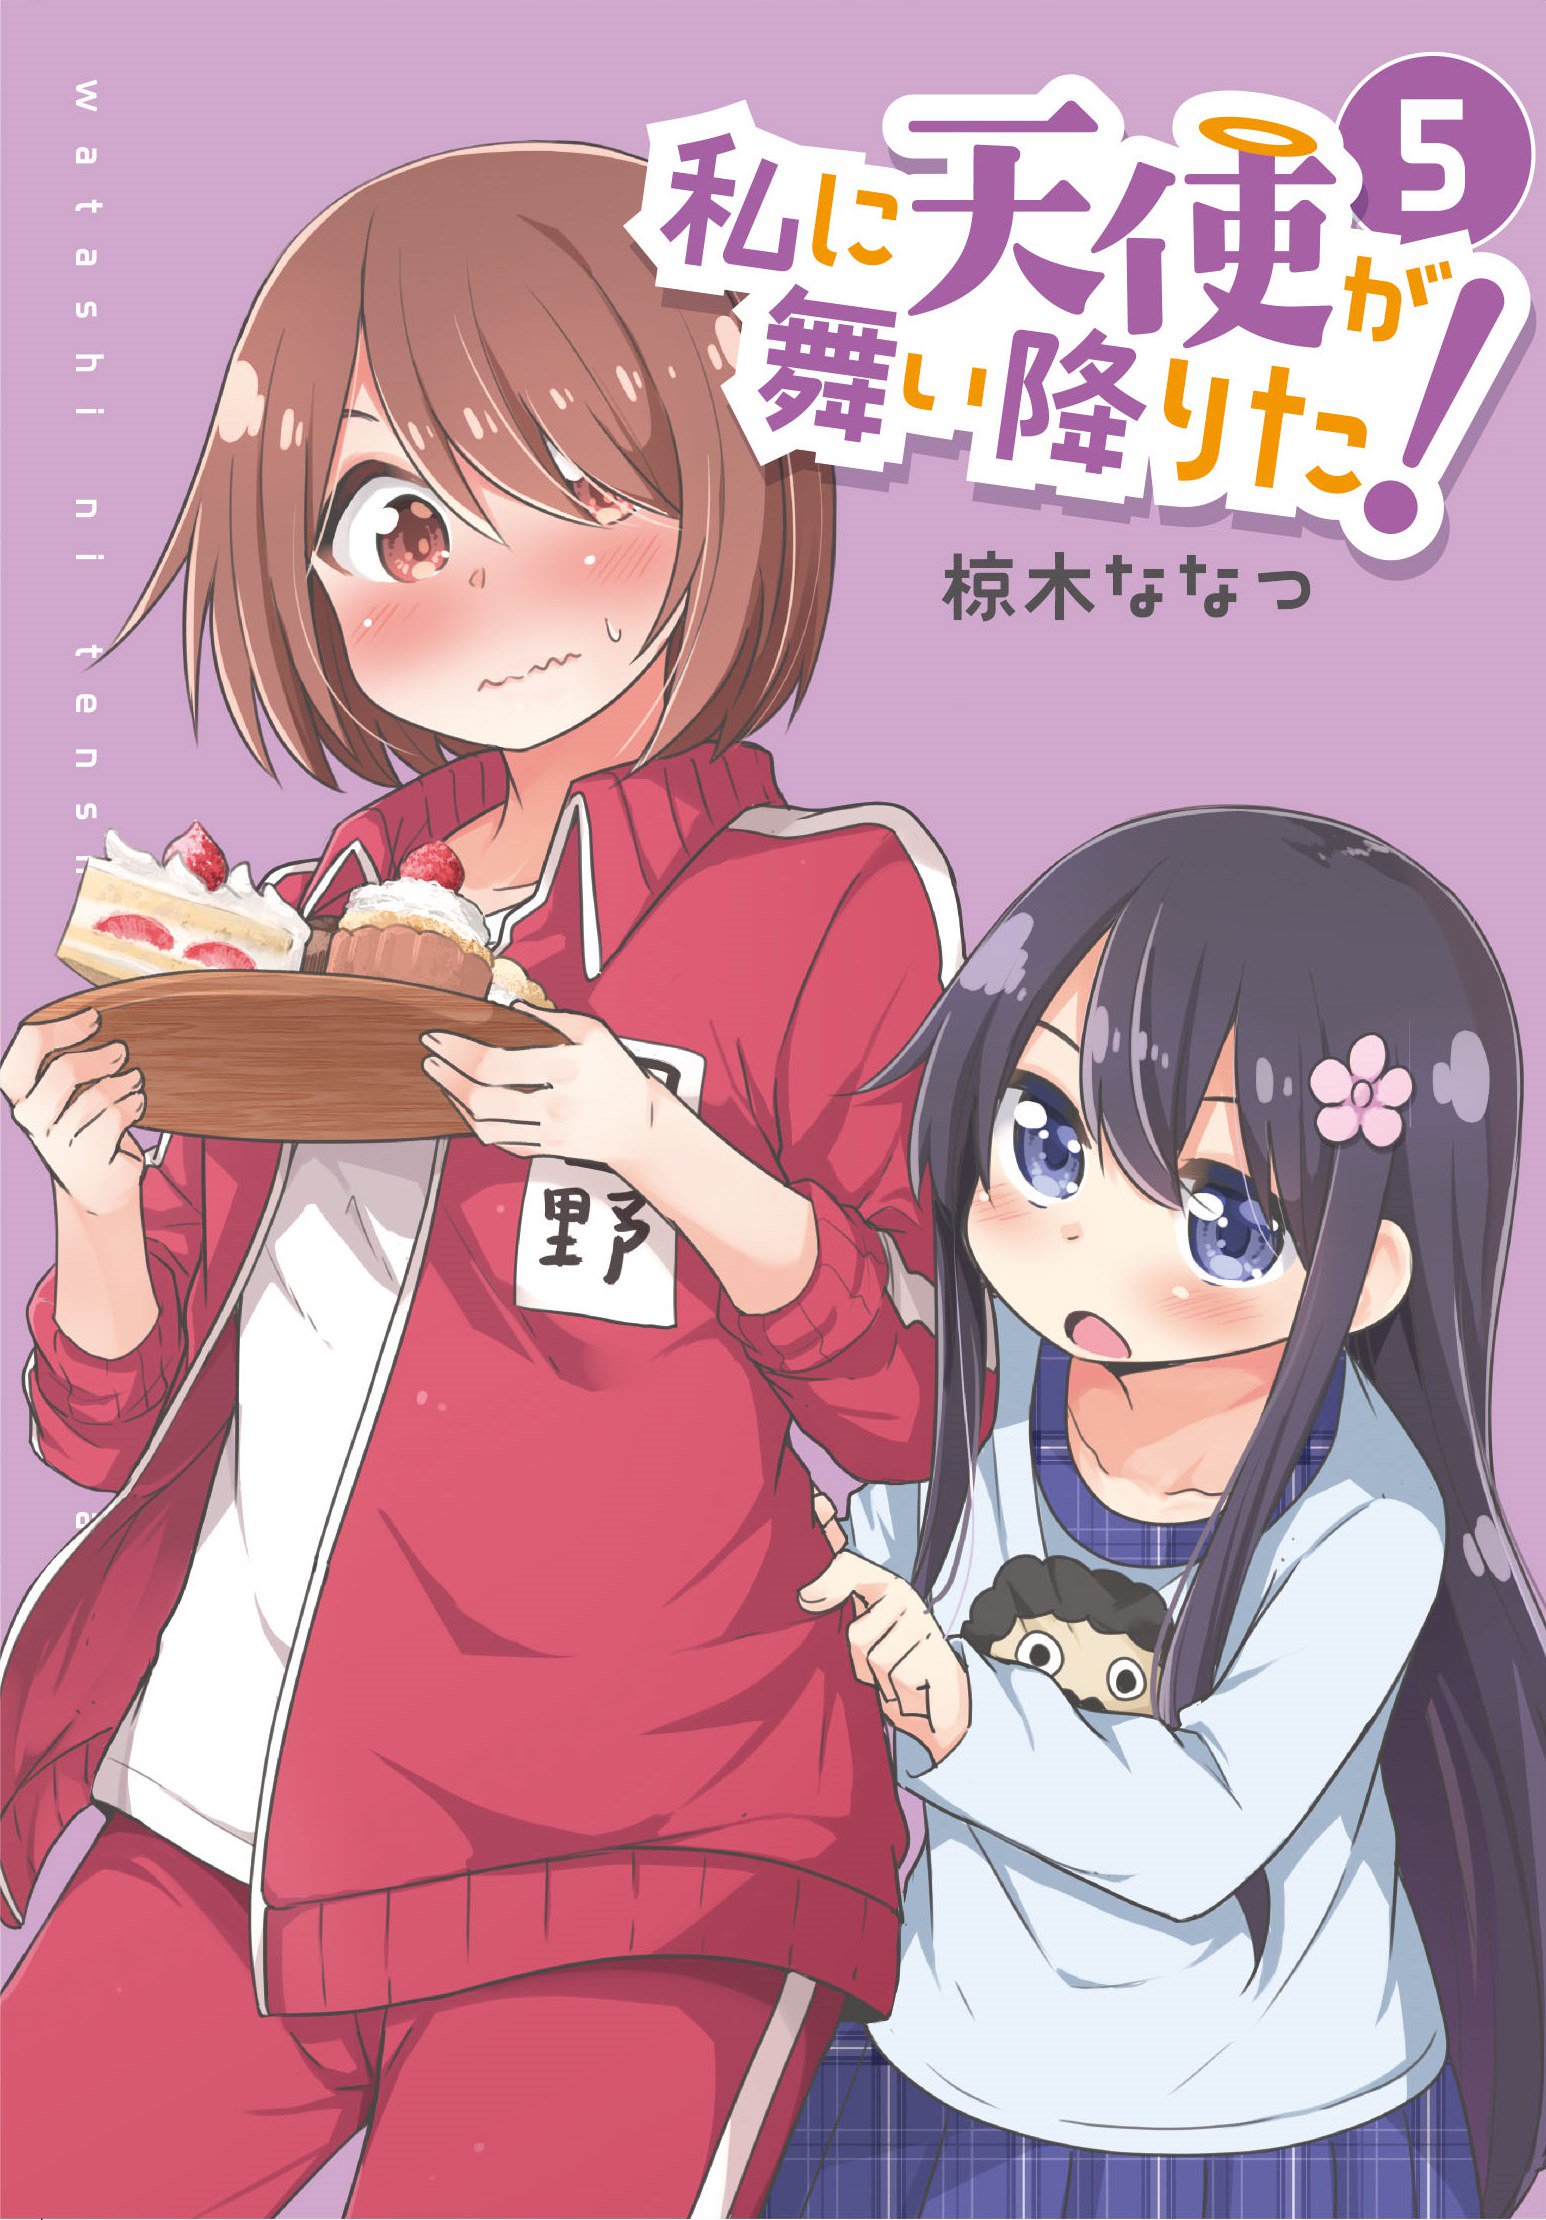 8pcs/lot Anime Watashi ni Tenshi ga Maiorita! Poster Miyako Hana